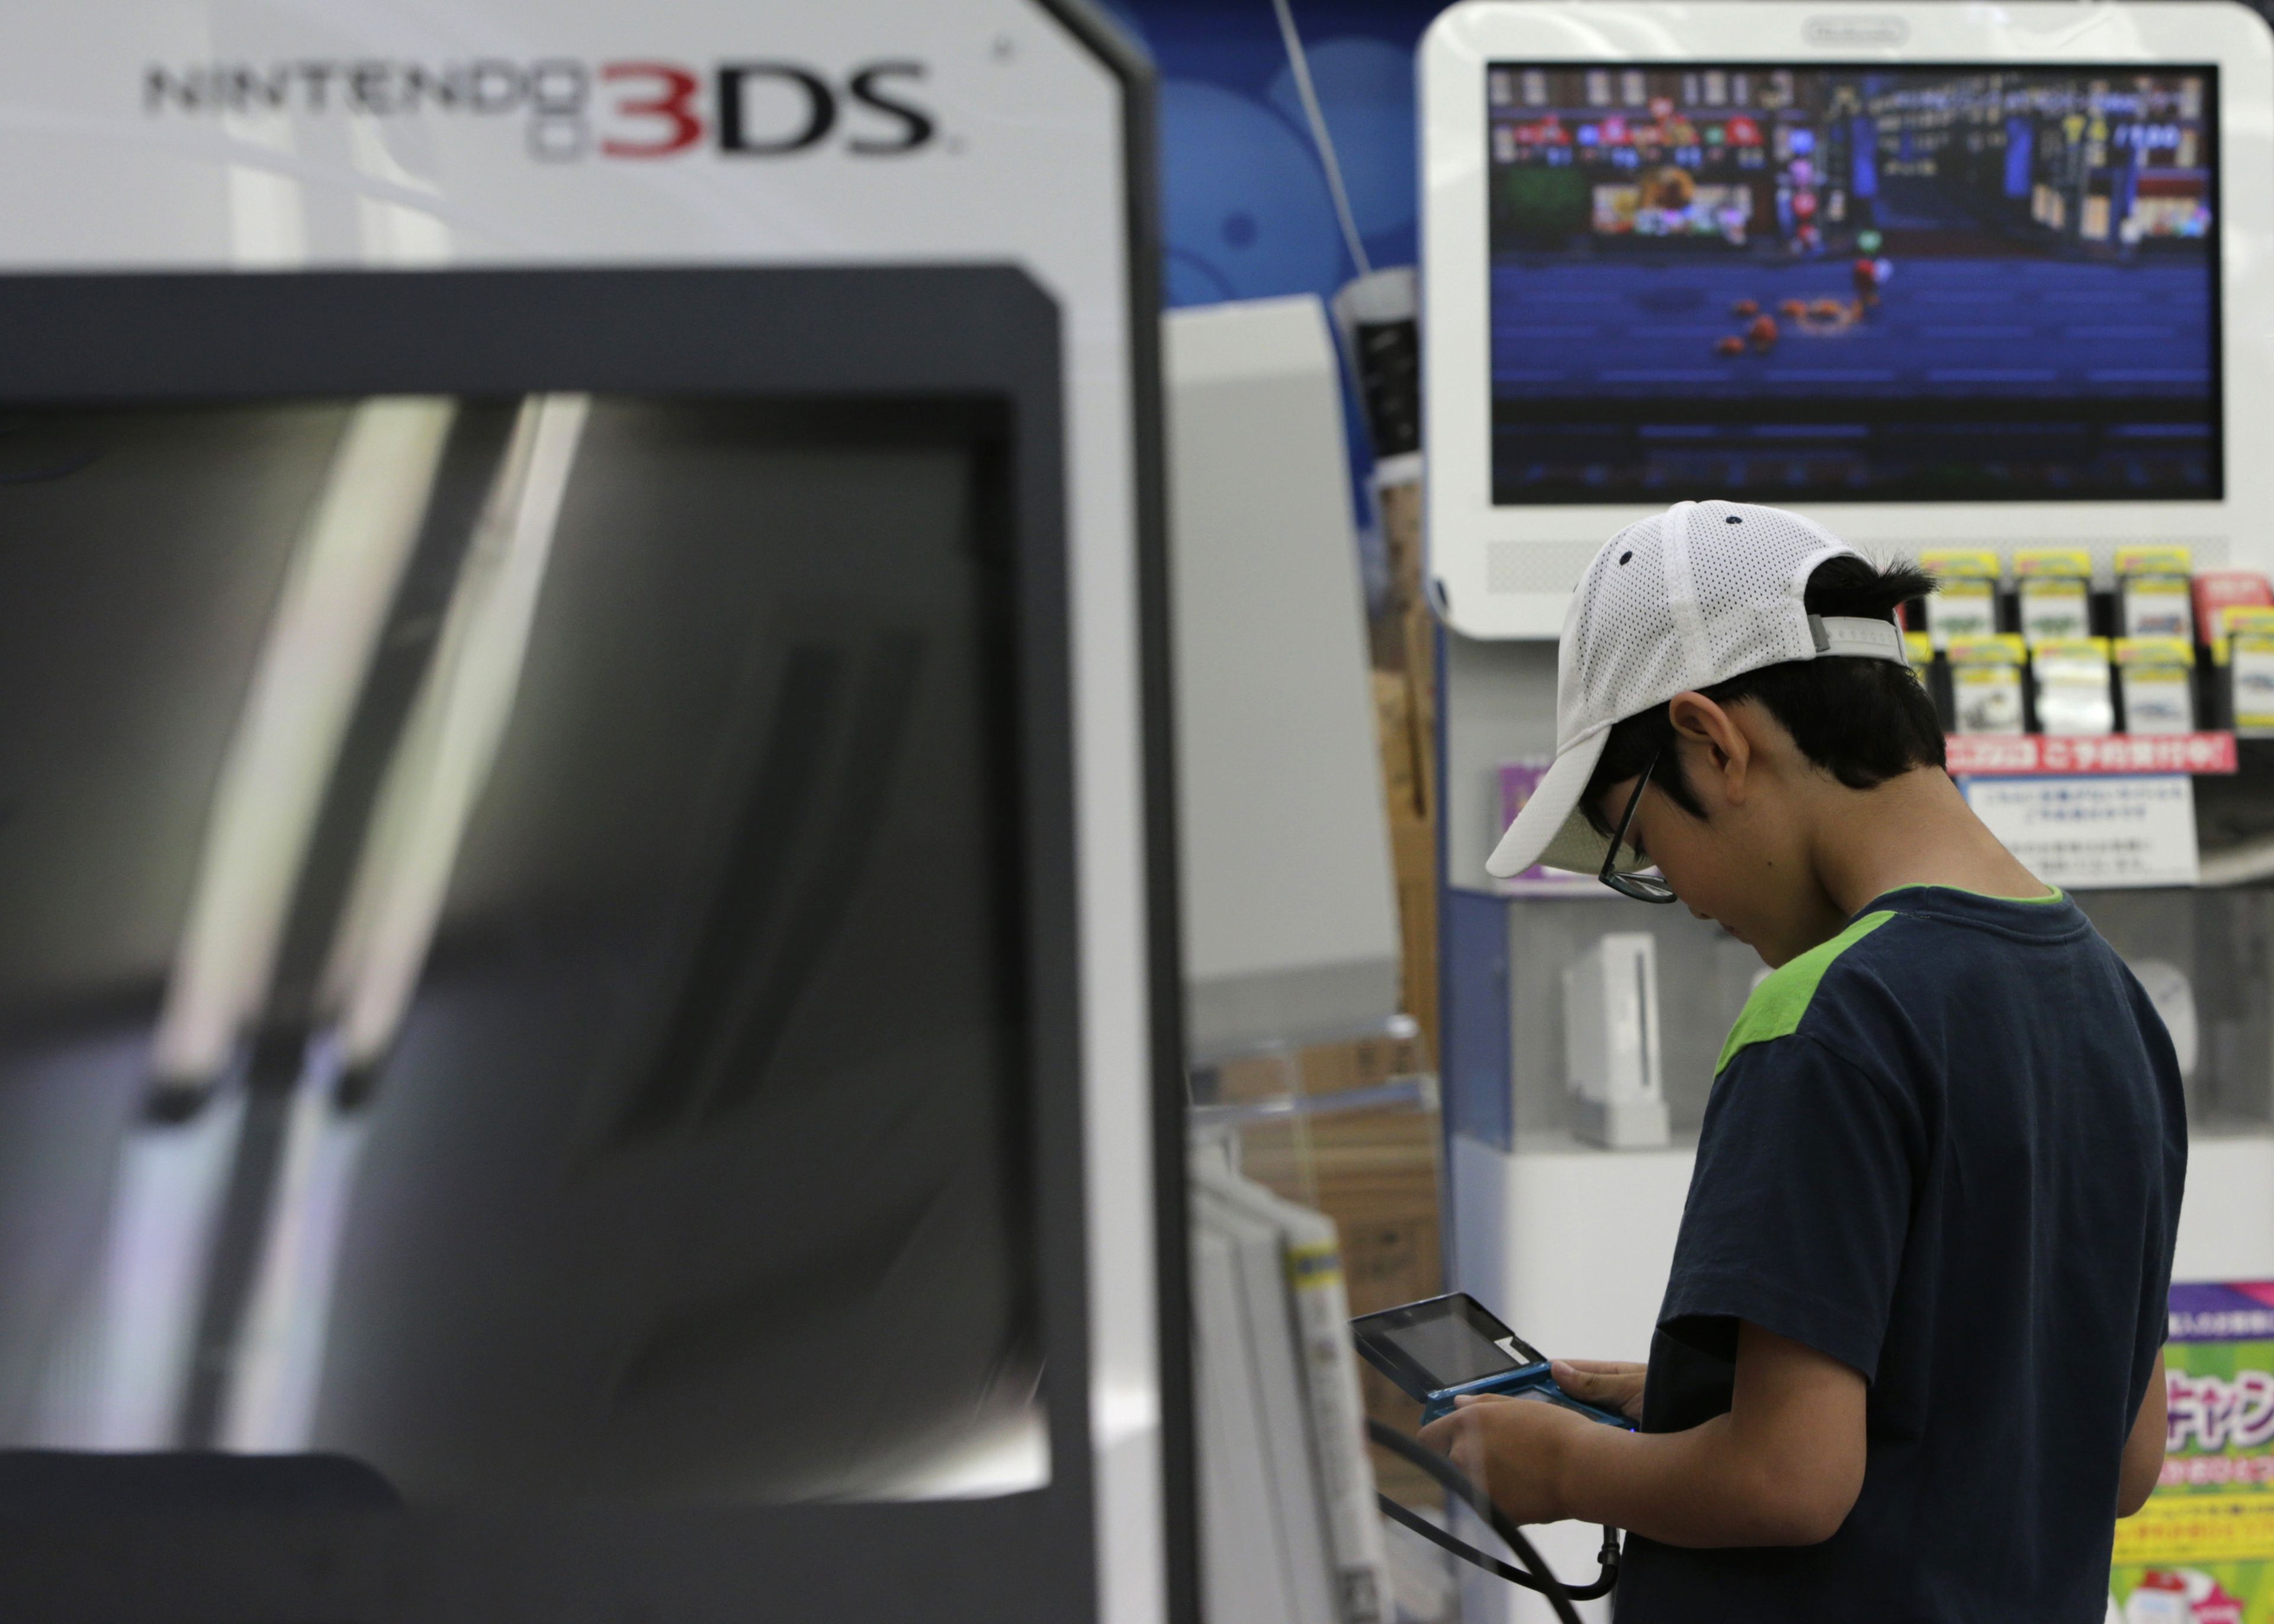 Un niño juega en un stand a la Nintendo 3DS.